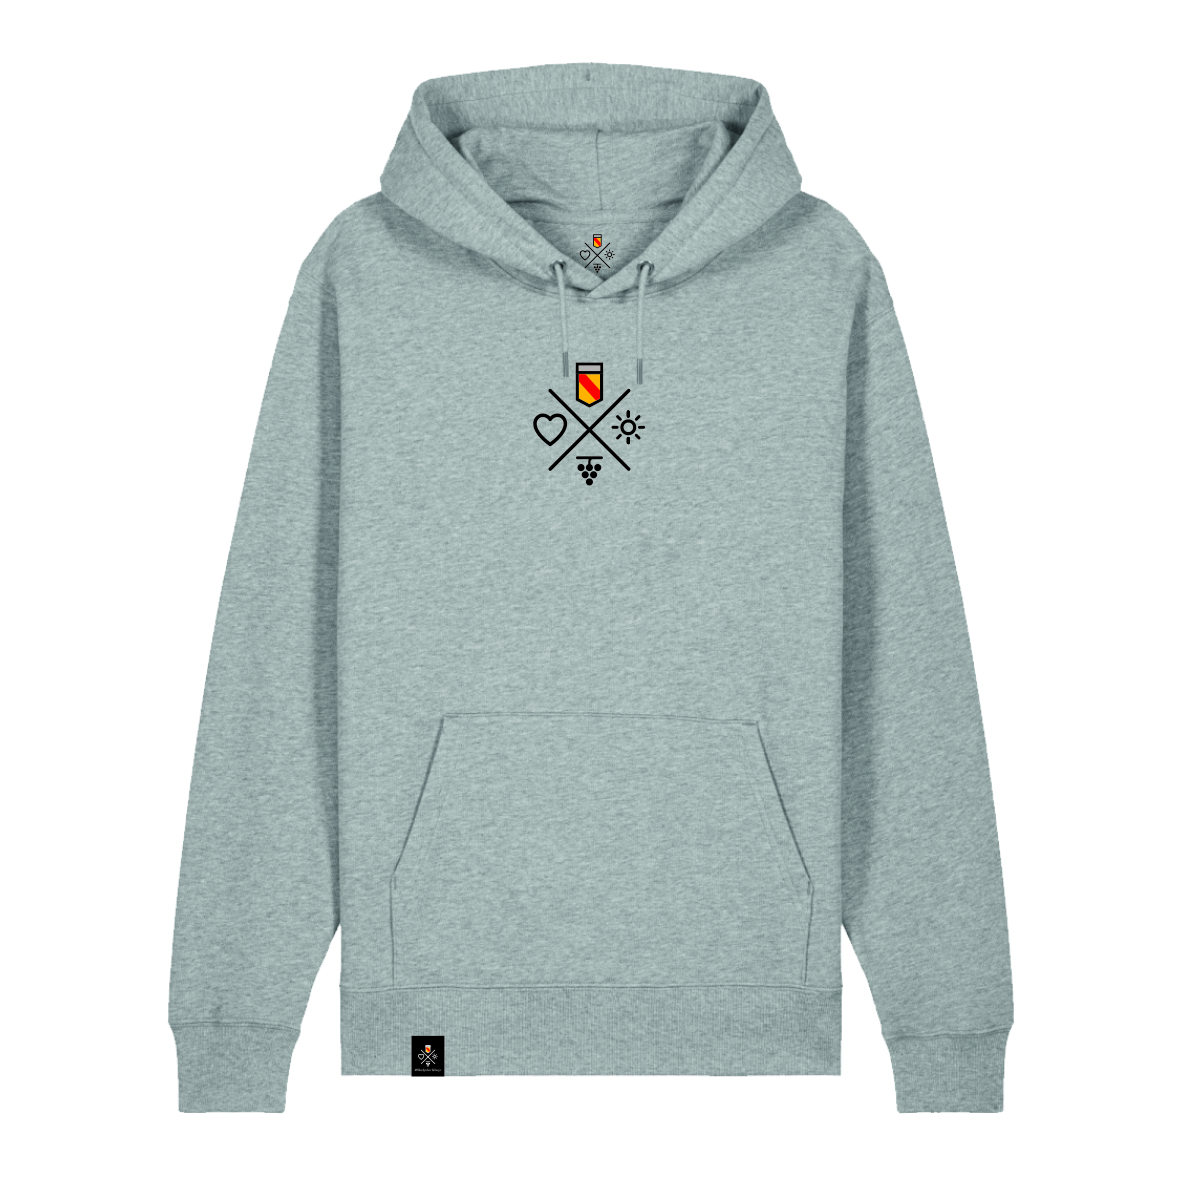 Hoodie Piktogramm Kreuz - Grey X, Badner-Style